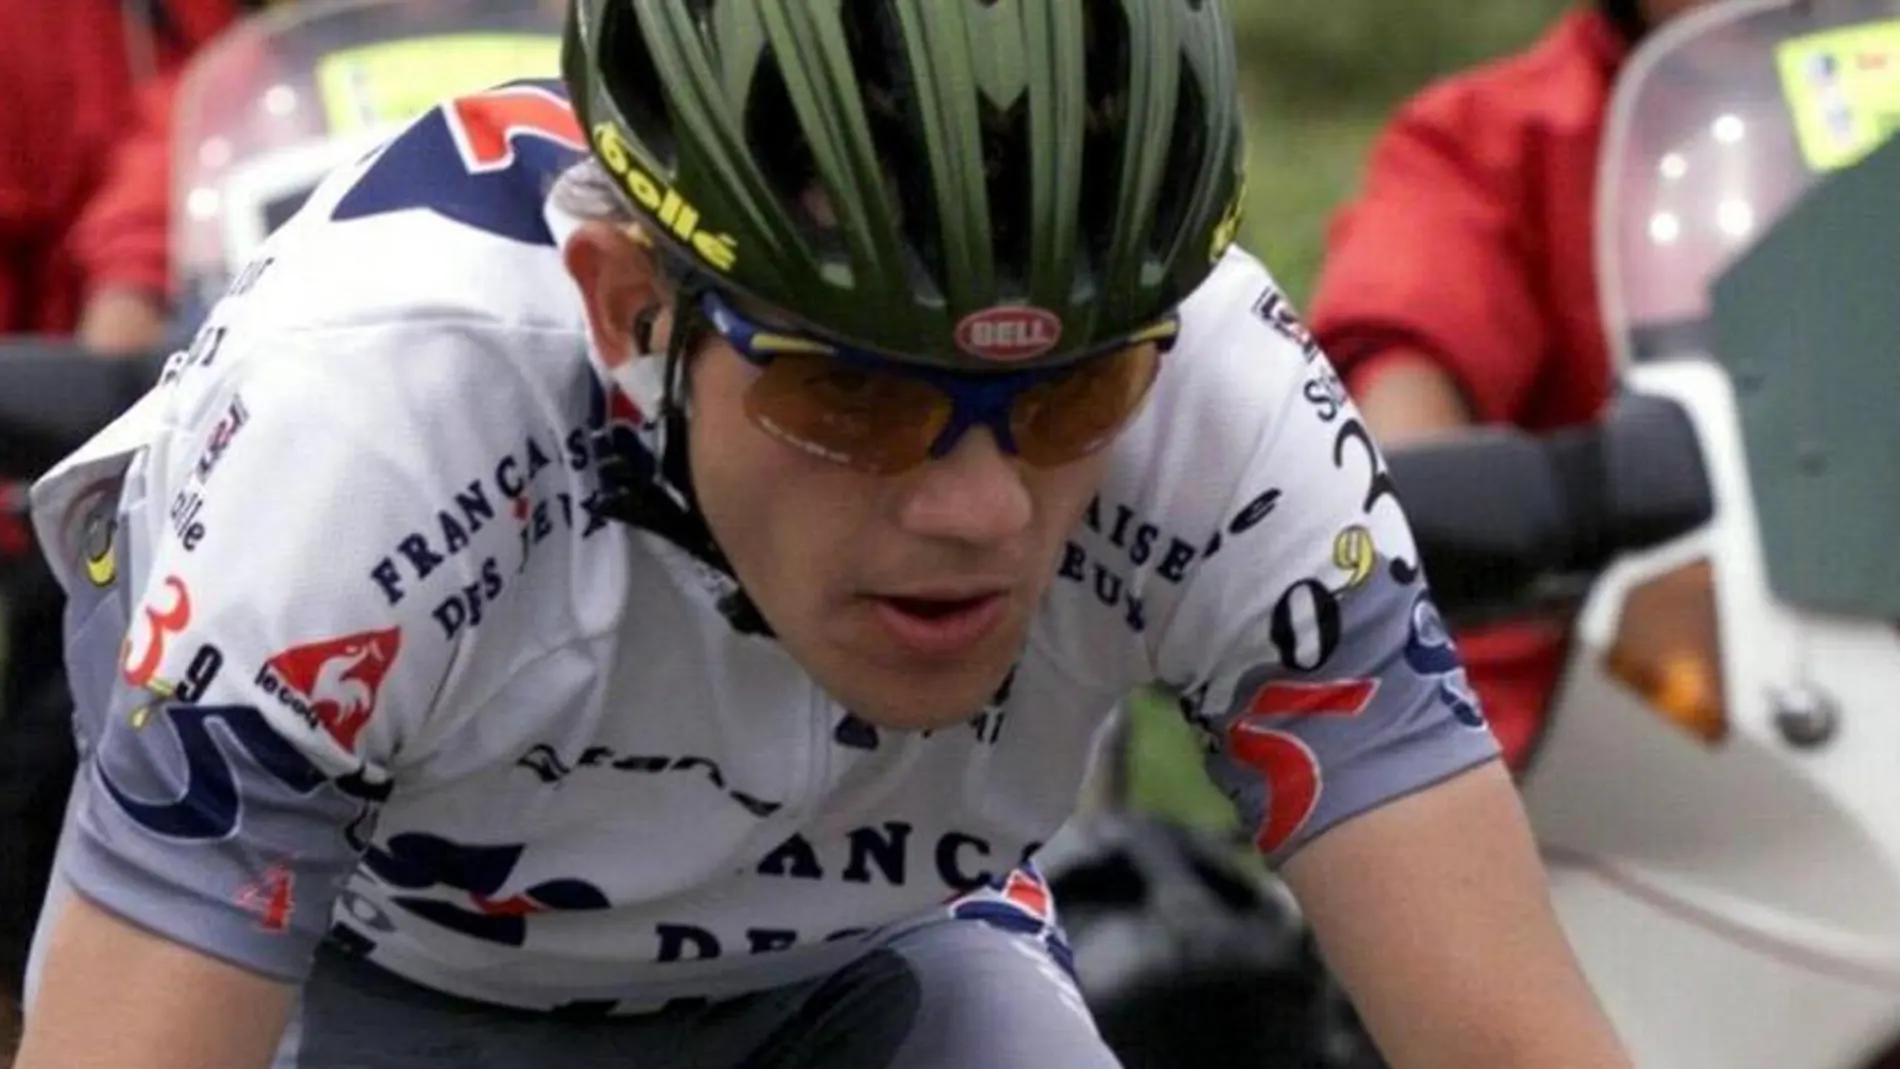 elegante Vegetales Emulación Christophe Bassons, ciclista en la época de Lance Armstrong: "Me llegaron a  ofrecer 40.000 euros al mes si me dopaba con EPO"